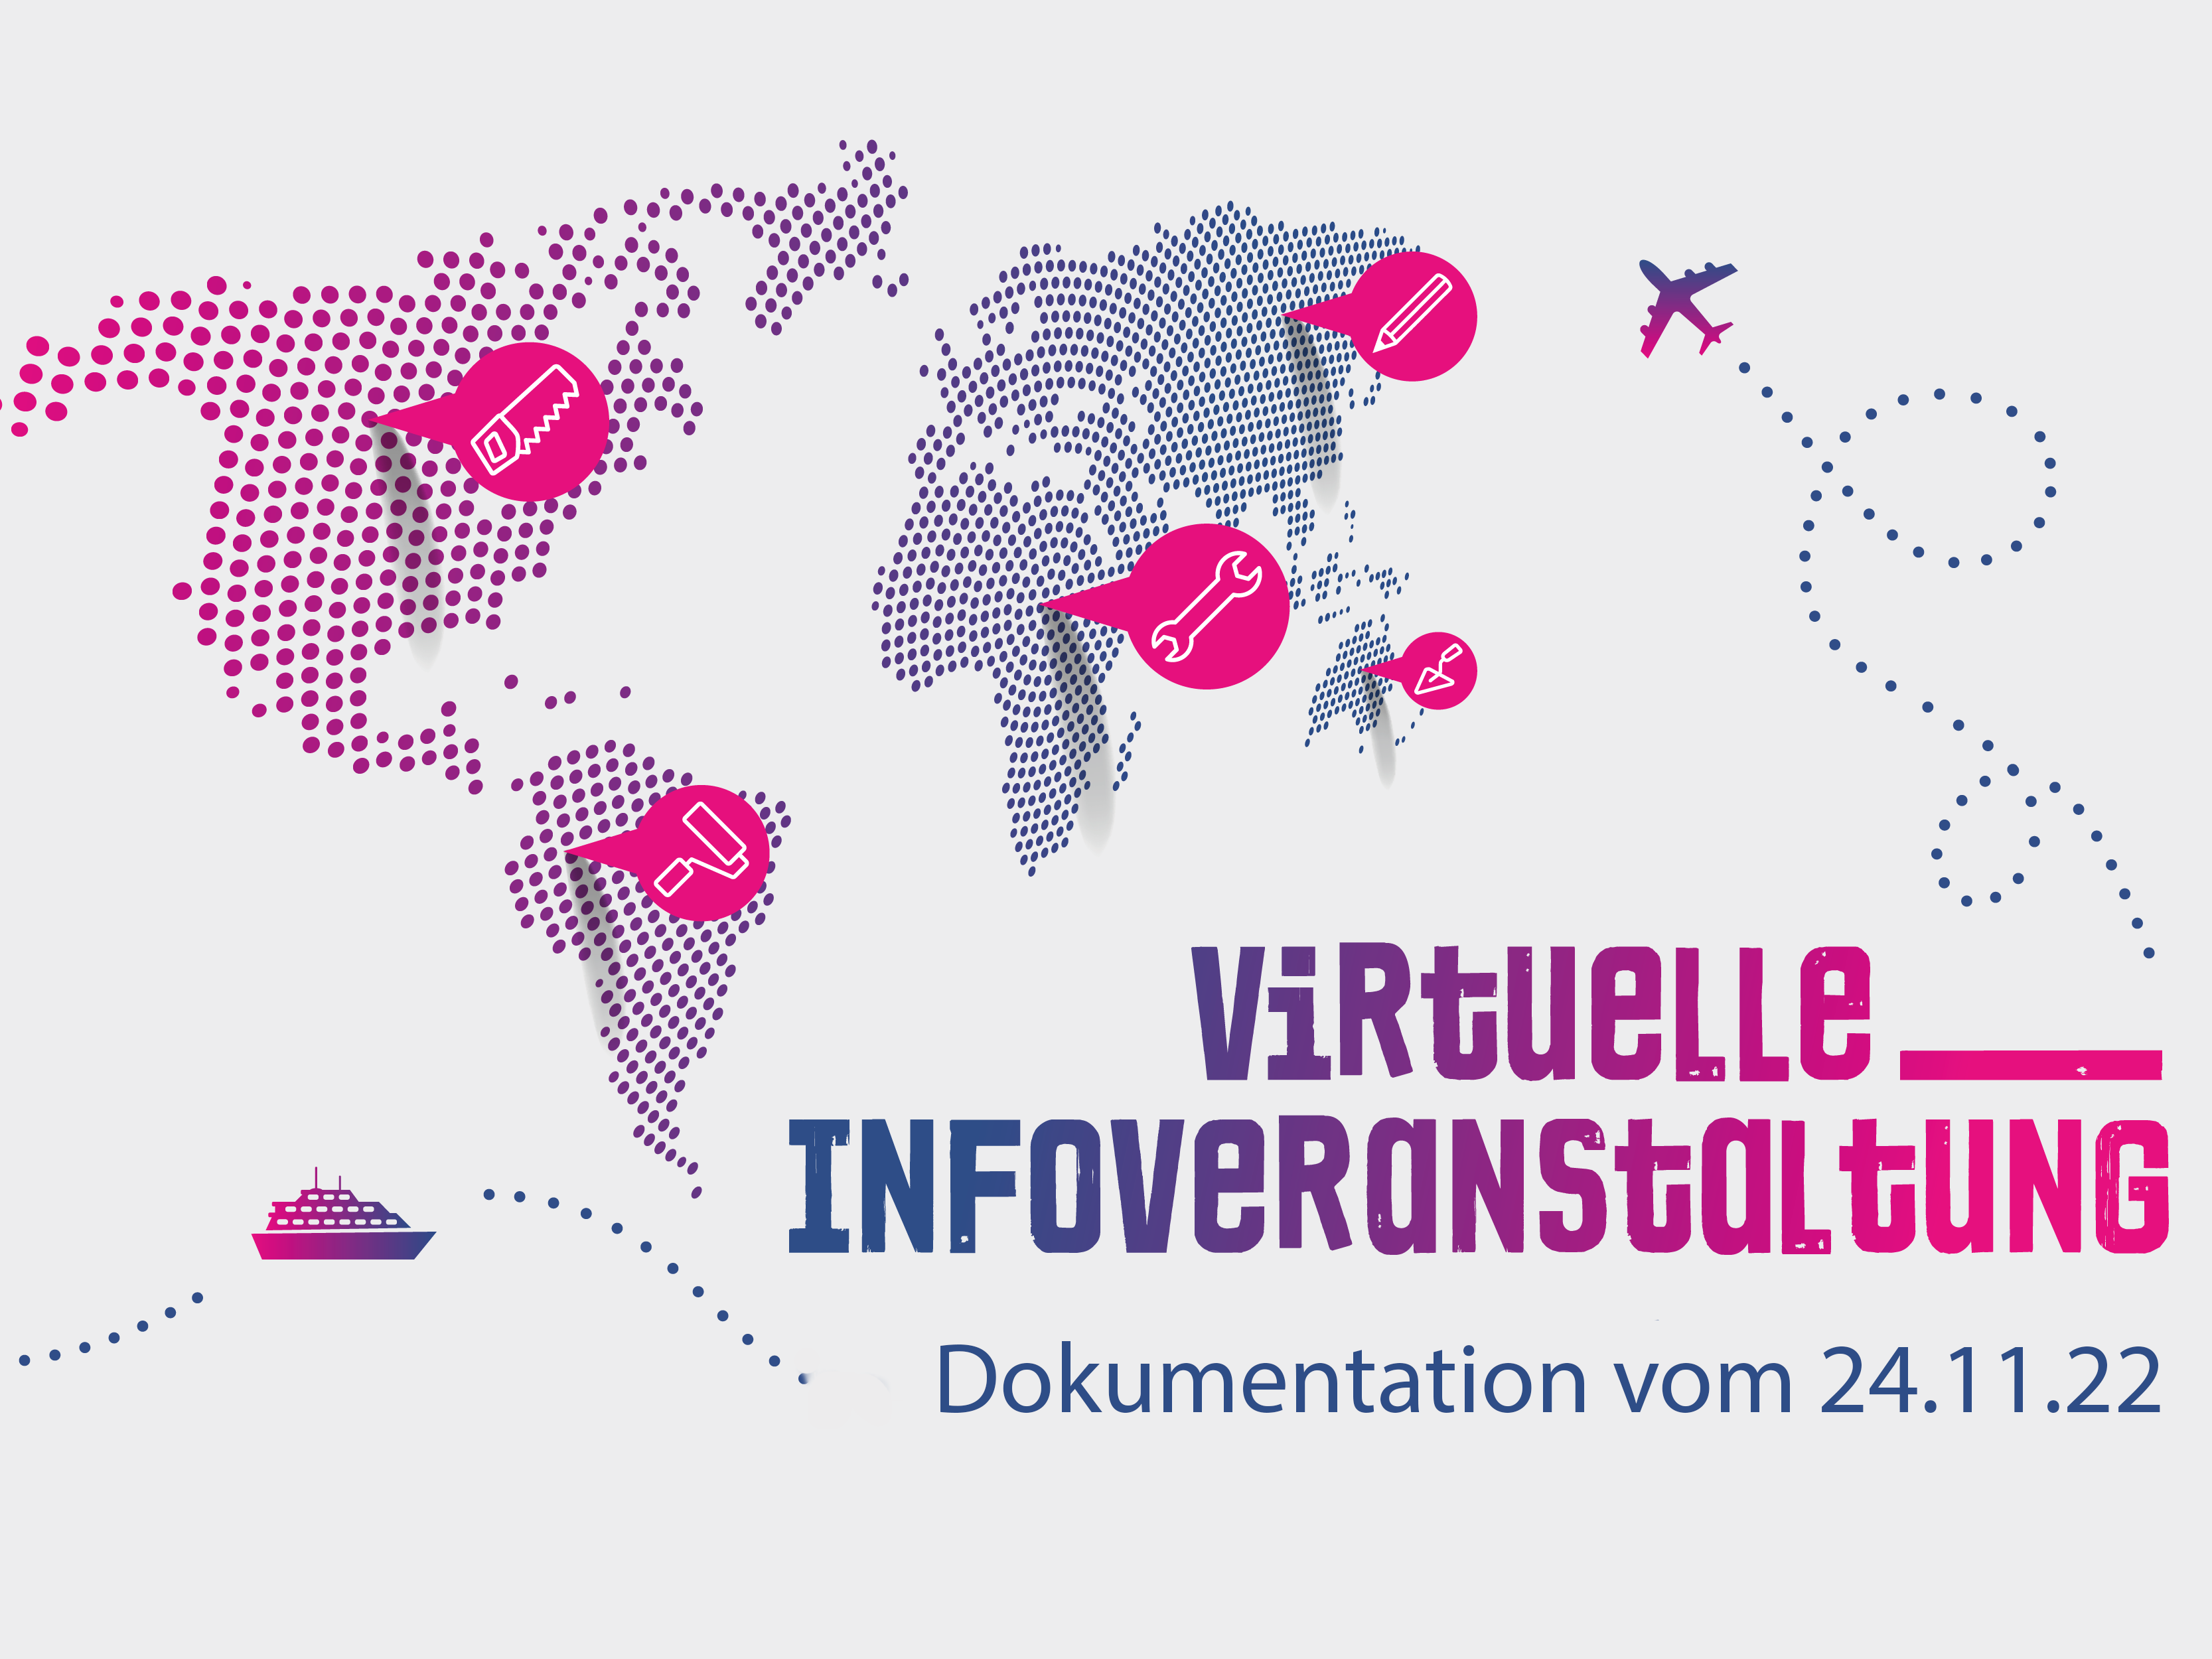 Visual mit dem Text "Dokumentation der virtuellen Infoveranstaltung am 24. November 2022" zum Förderprogramm AusbildungWeltweit